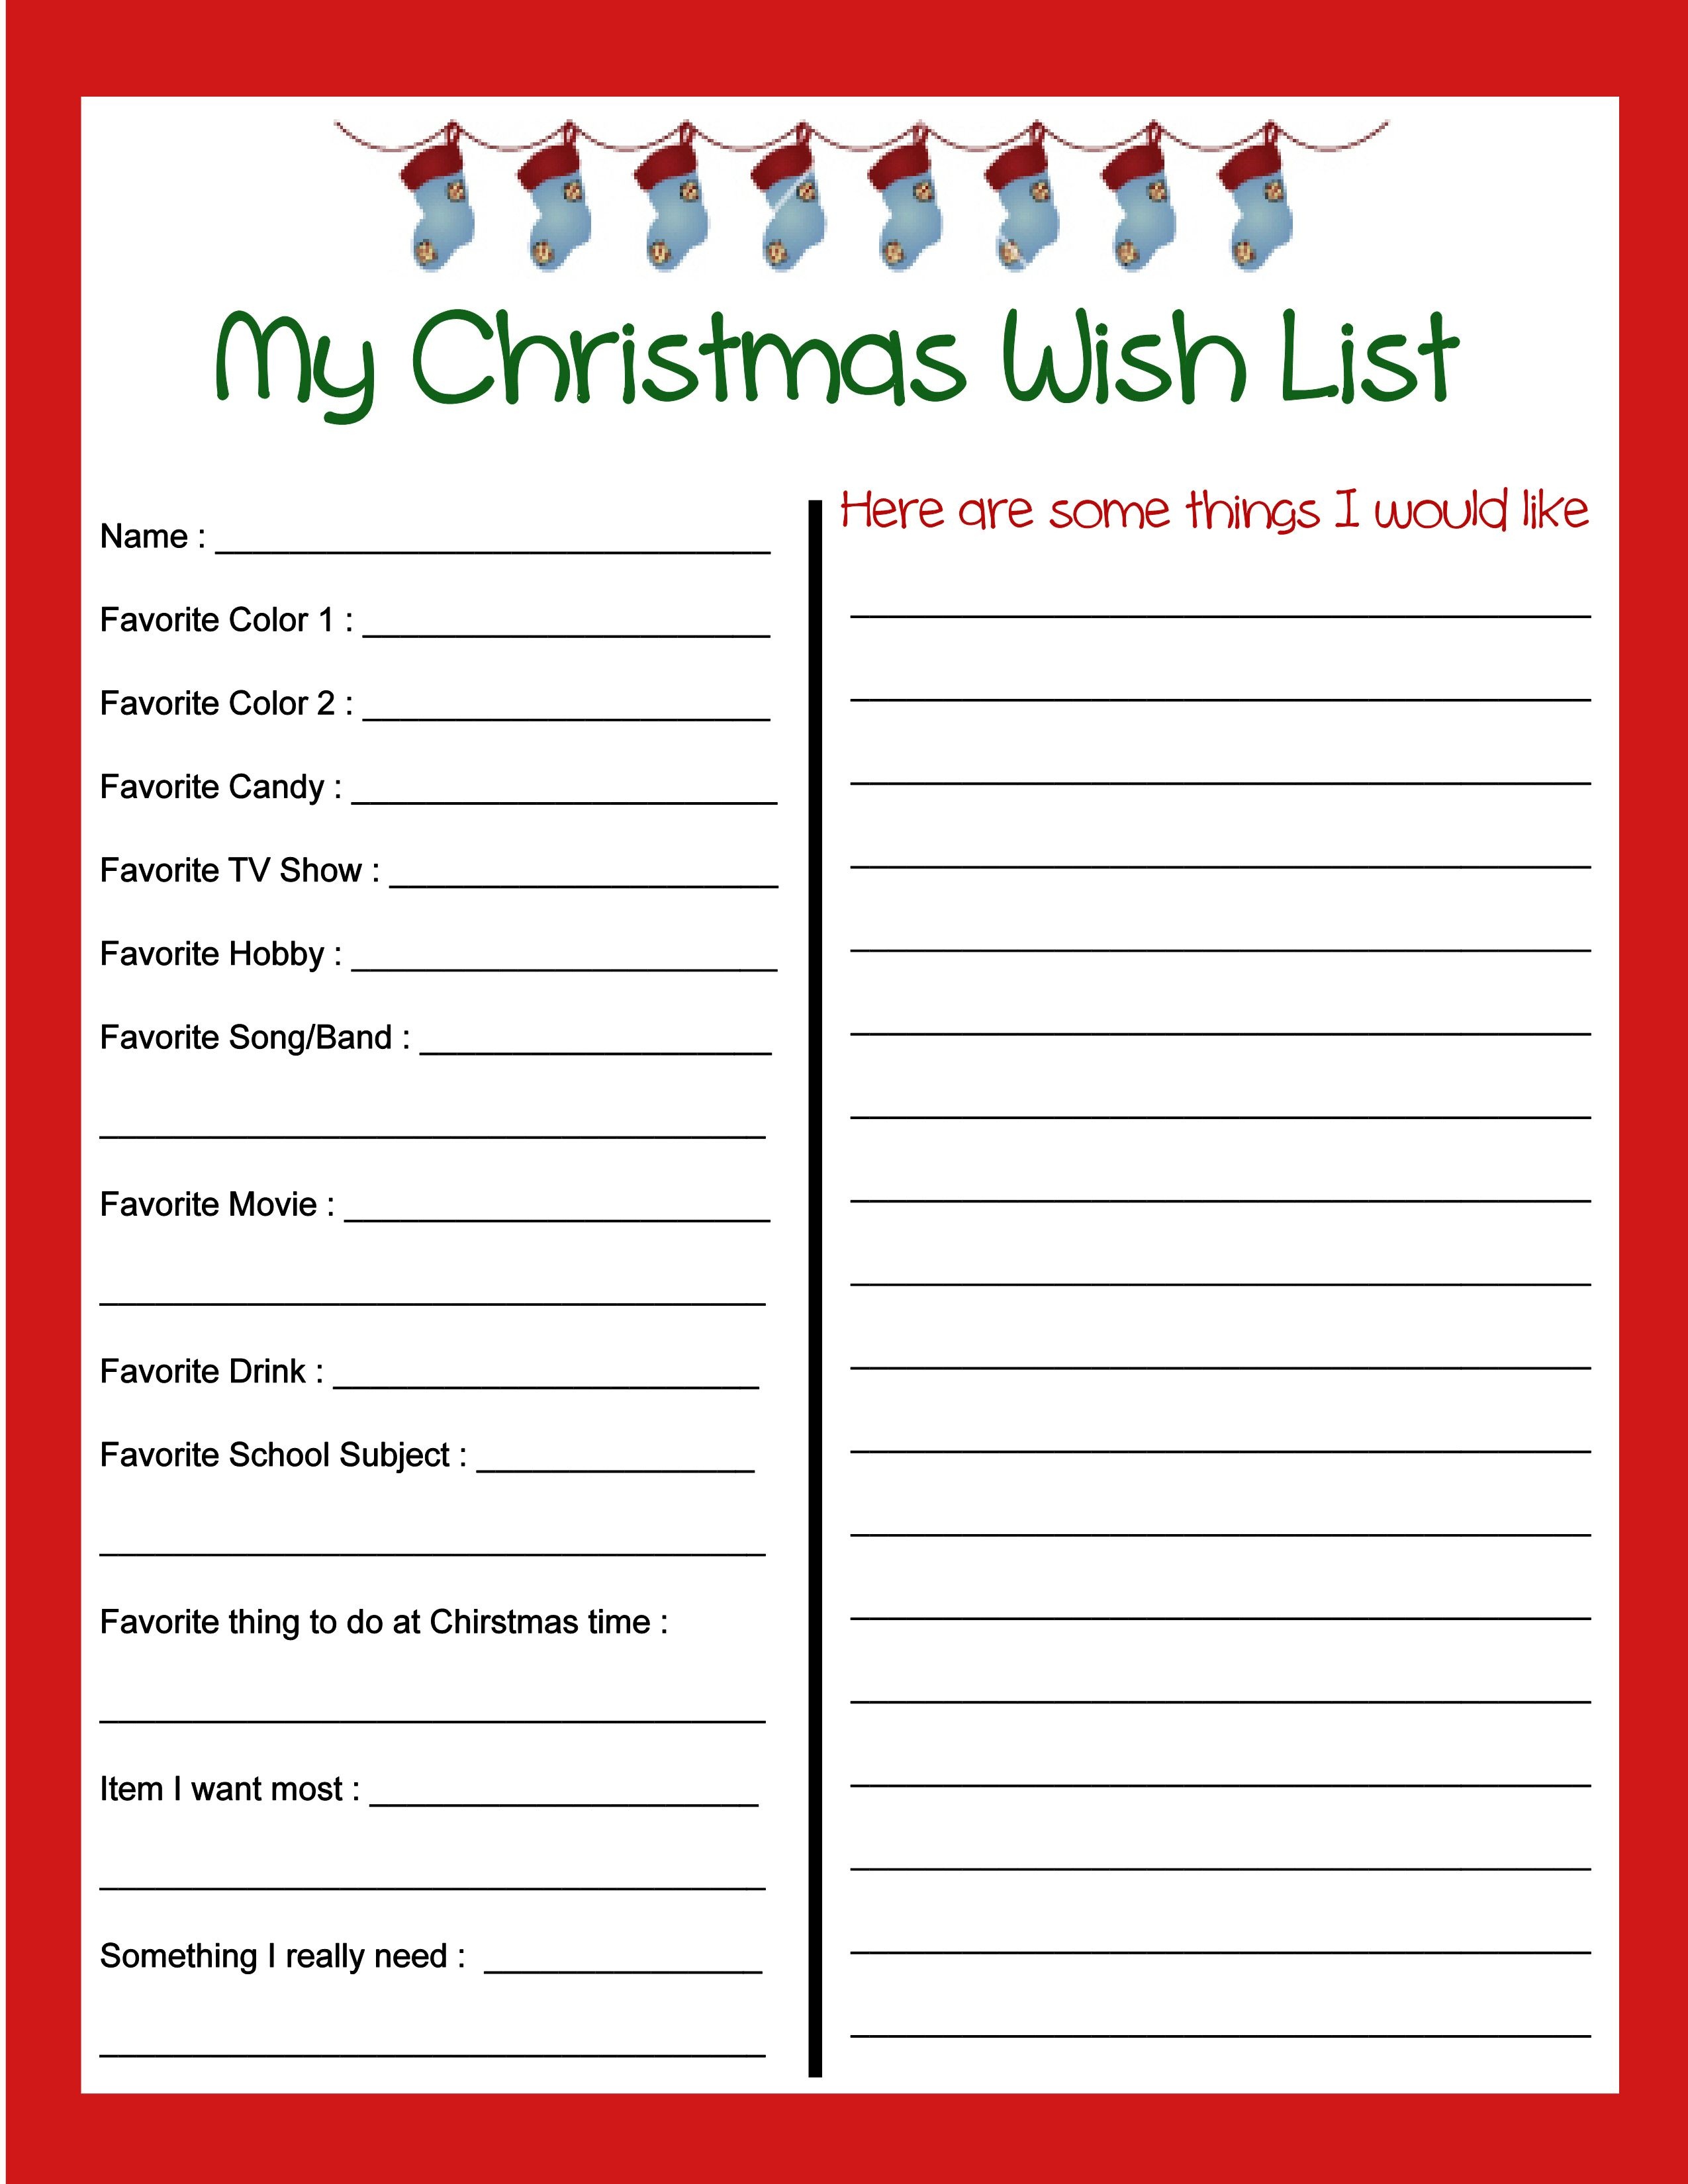 Pinbecky Stout On Christmas!!! | Christmas Wish List Template - Free Printable Christmas List Maker